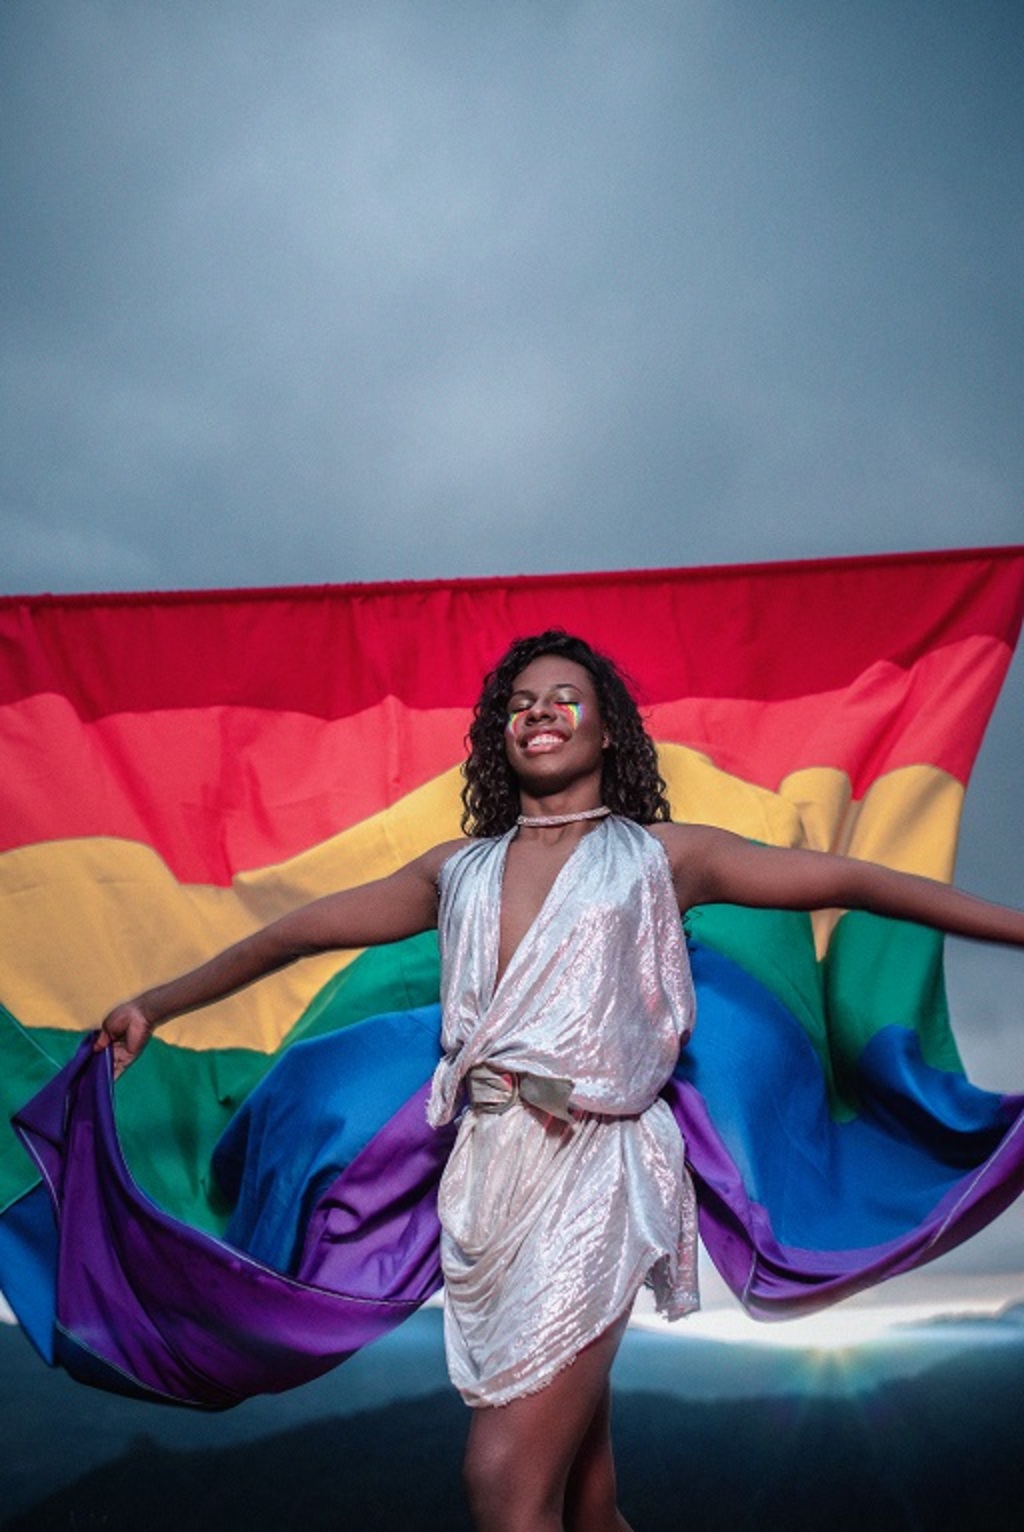 Renata é mulher trans e influenciadora digital. Foi modelo para ensaio fotográfico em celebração ao Mês do Orgulho LGBT+